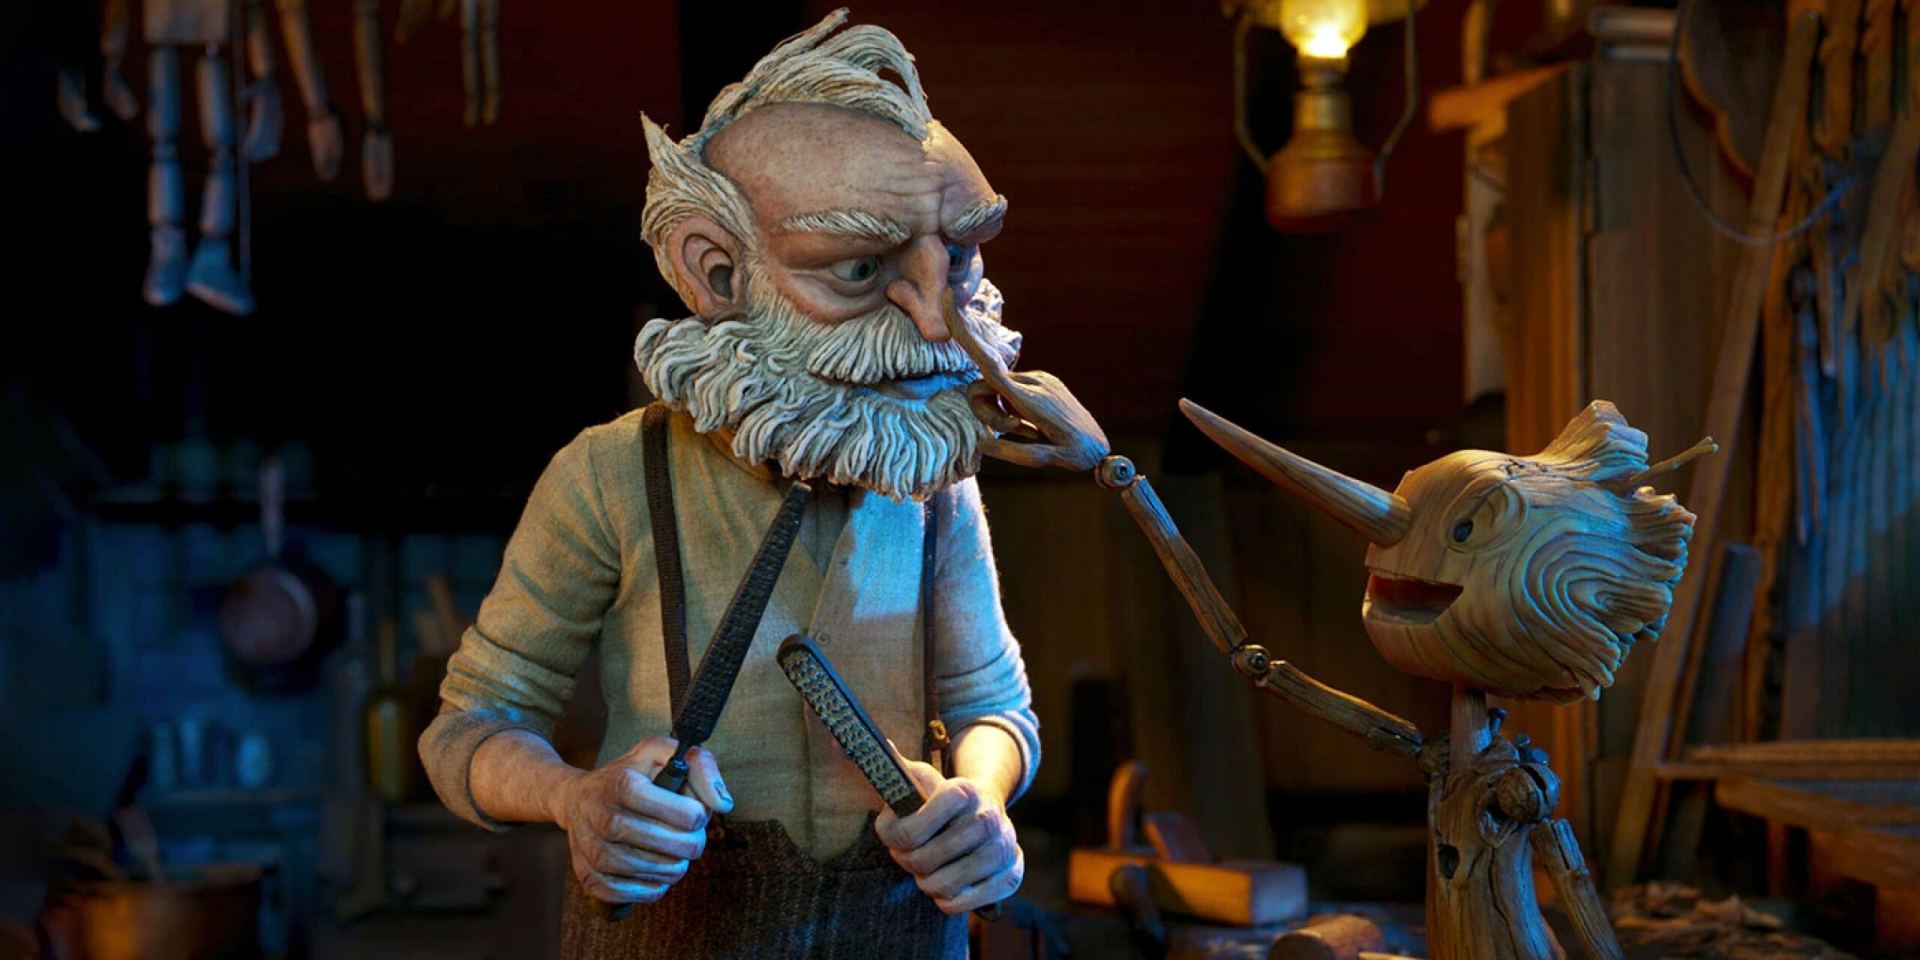 Мультфильм "Пиноккио Гильермо дель Торо" получил премию "Оскар"